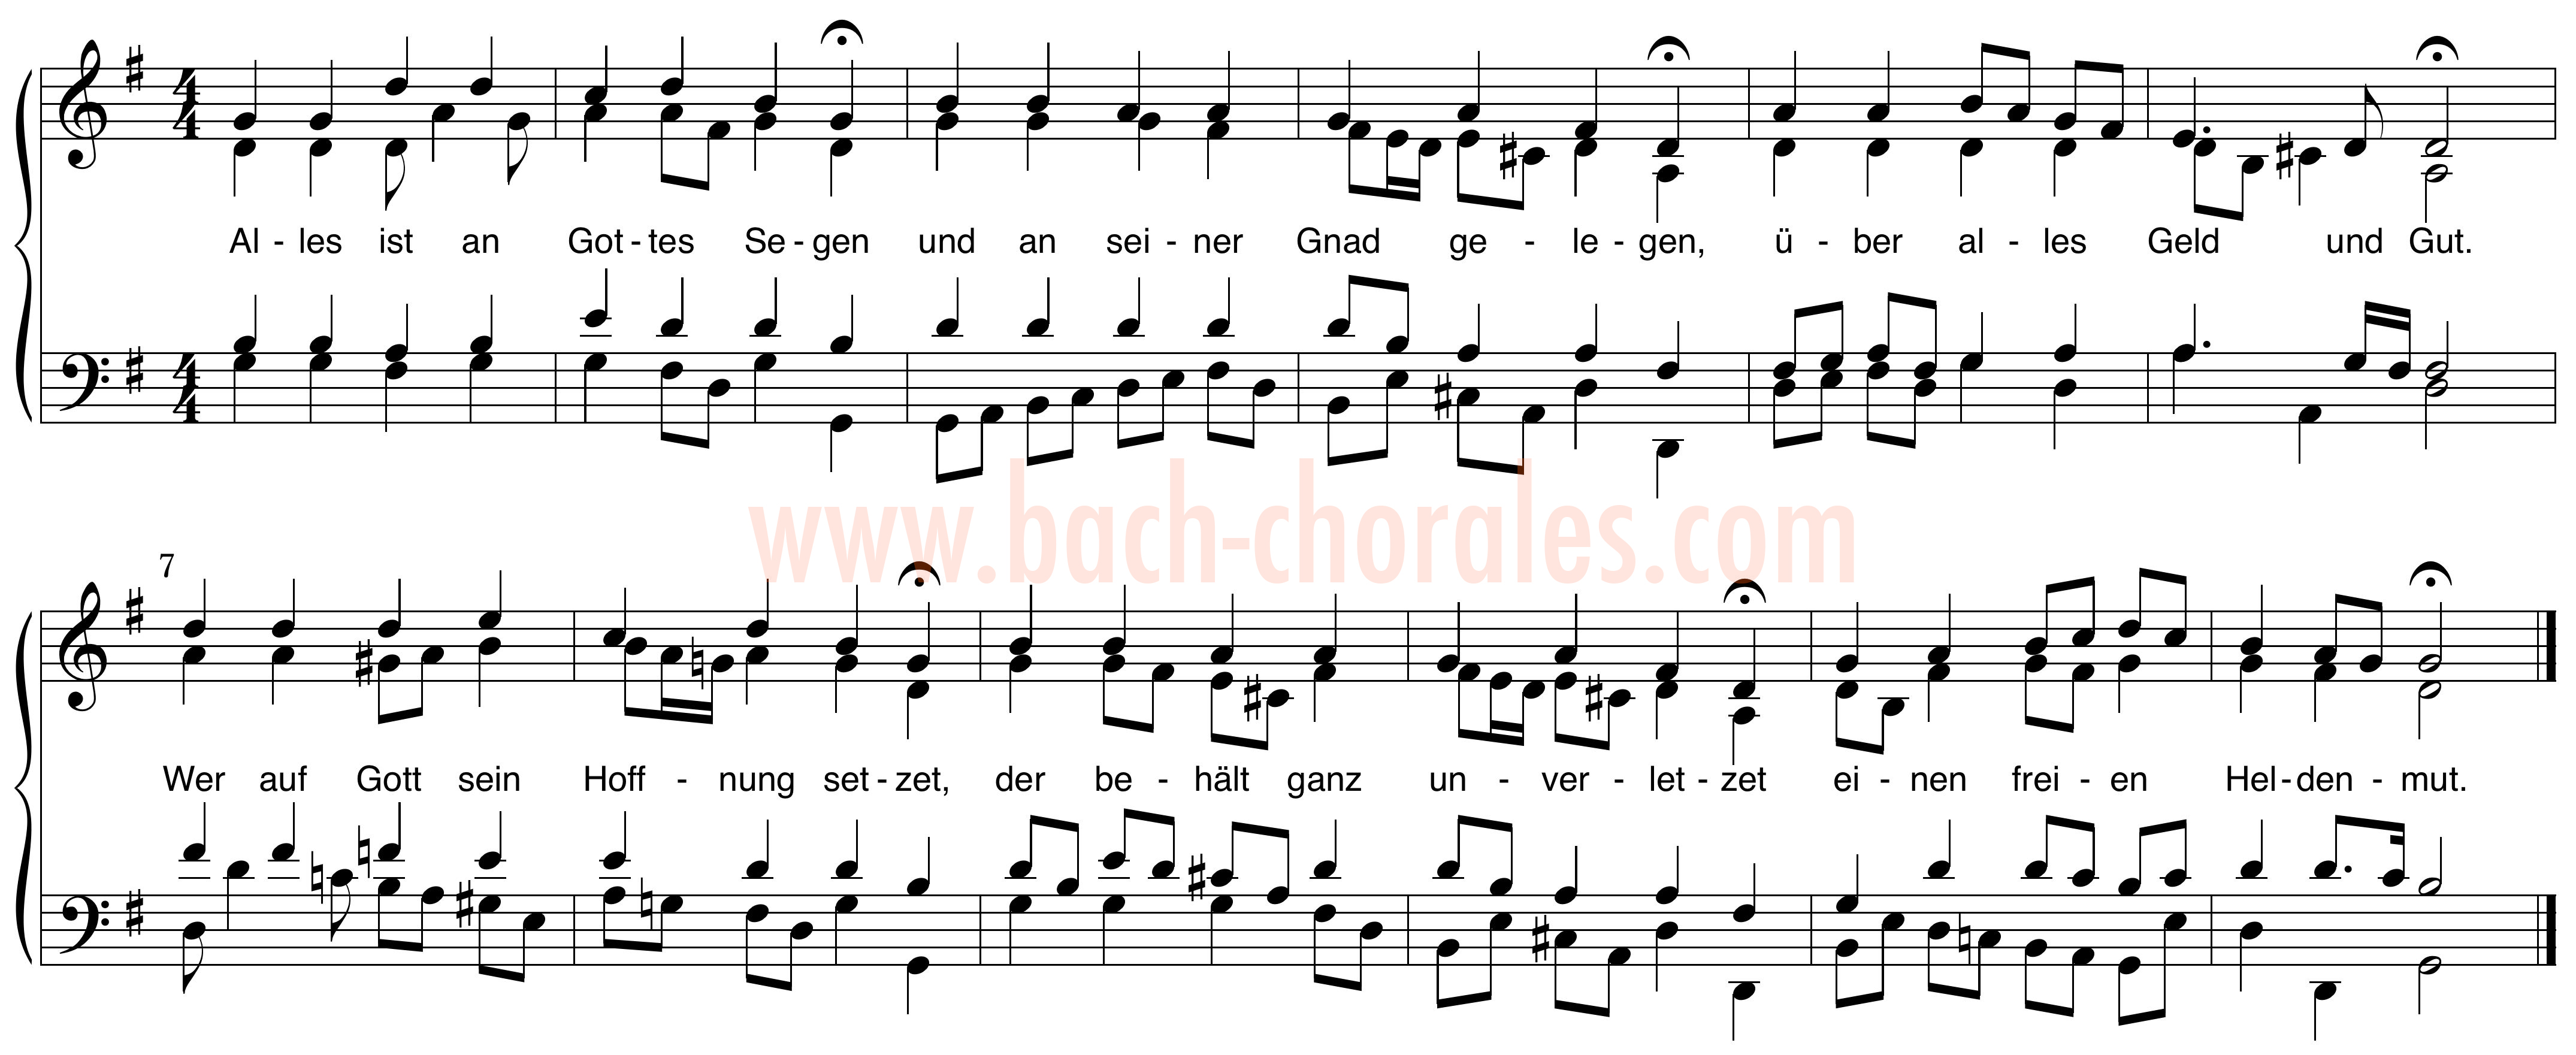 notenbeeld BWV 263 op https://www.bach-chorales.com/